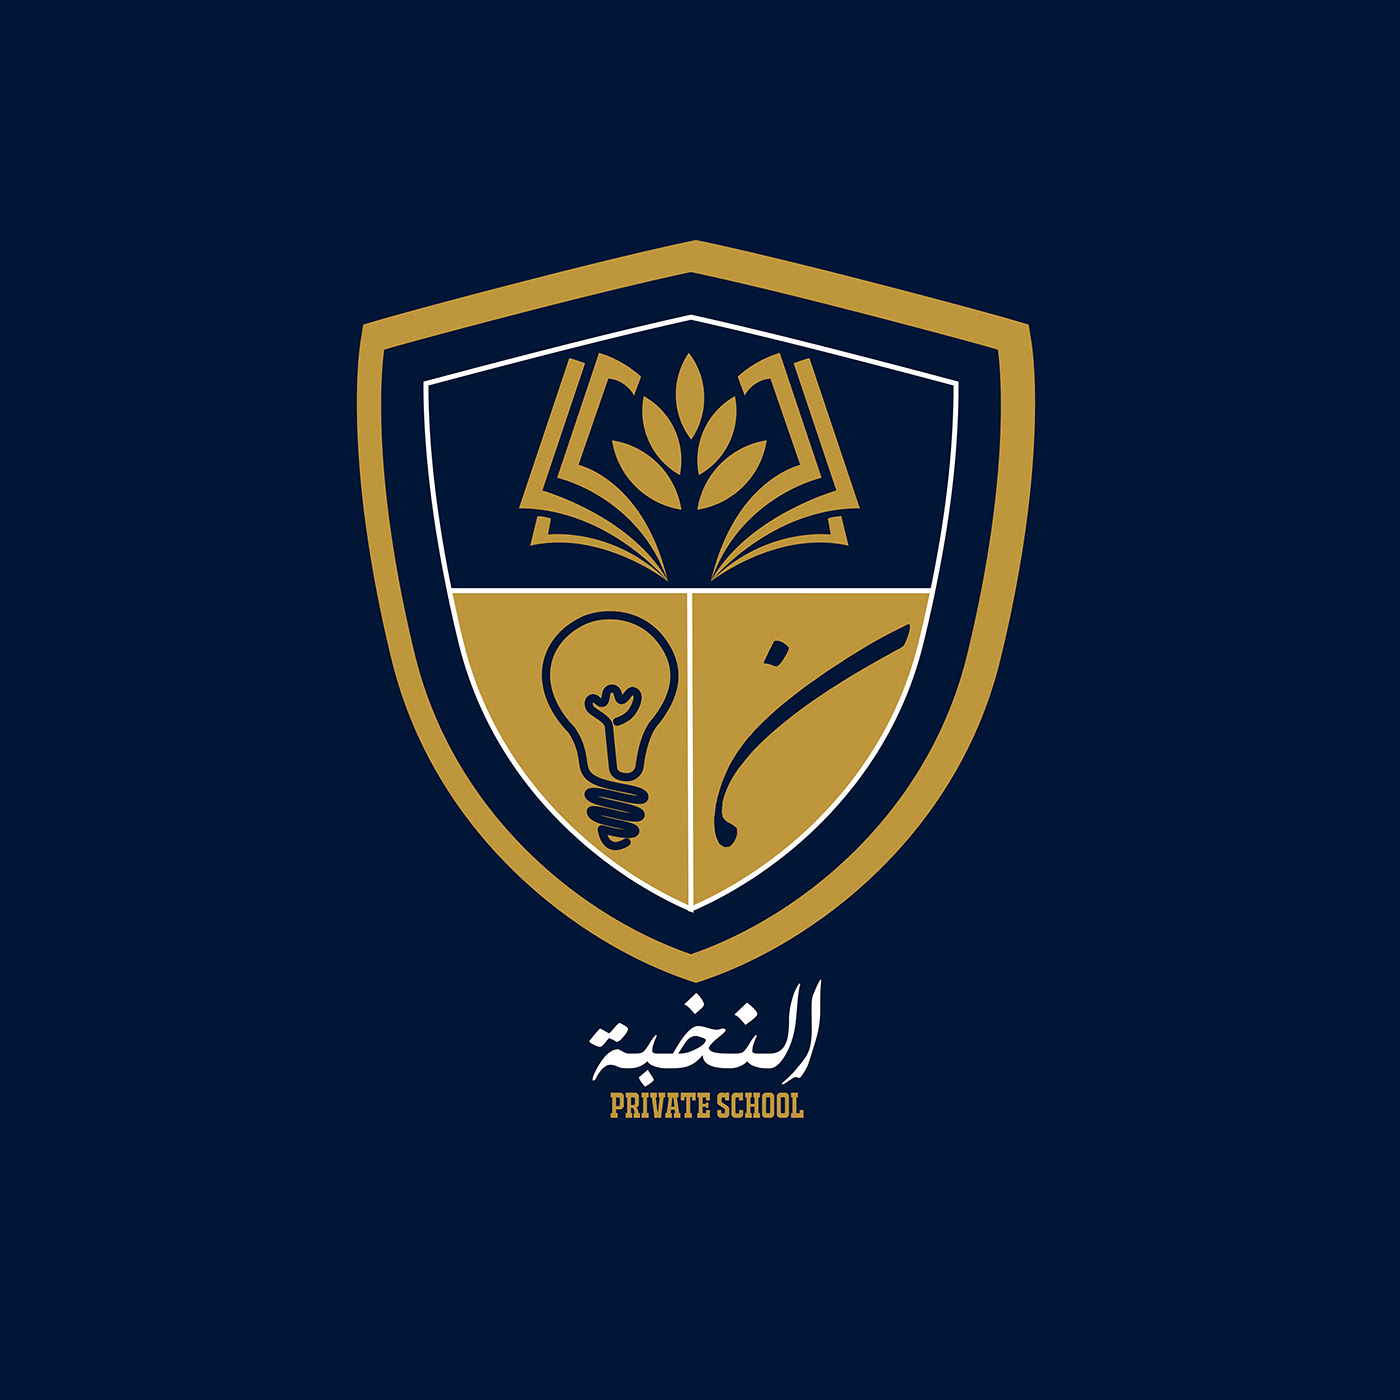 Image may contain: symbol, emblem and logo